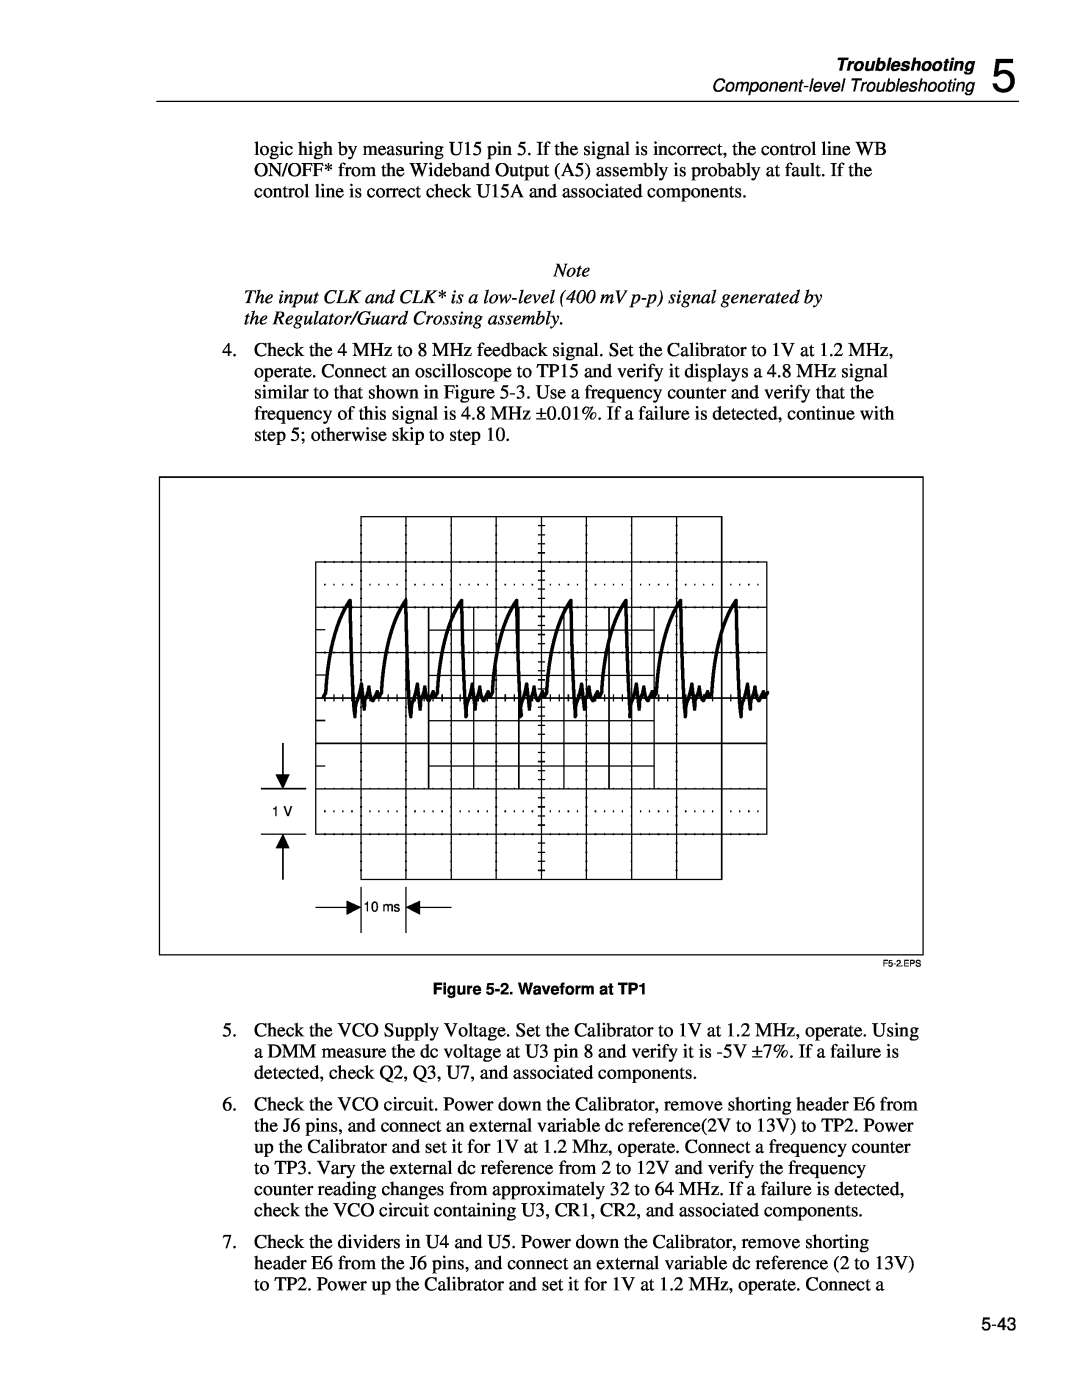 Fluke 5720A service manual 2. Waveform at TP1, F5-2.EPS 